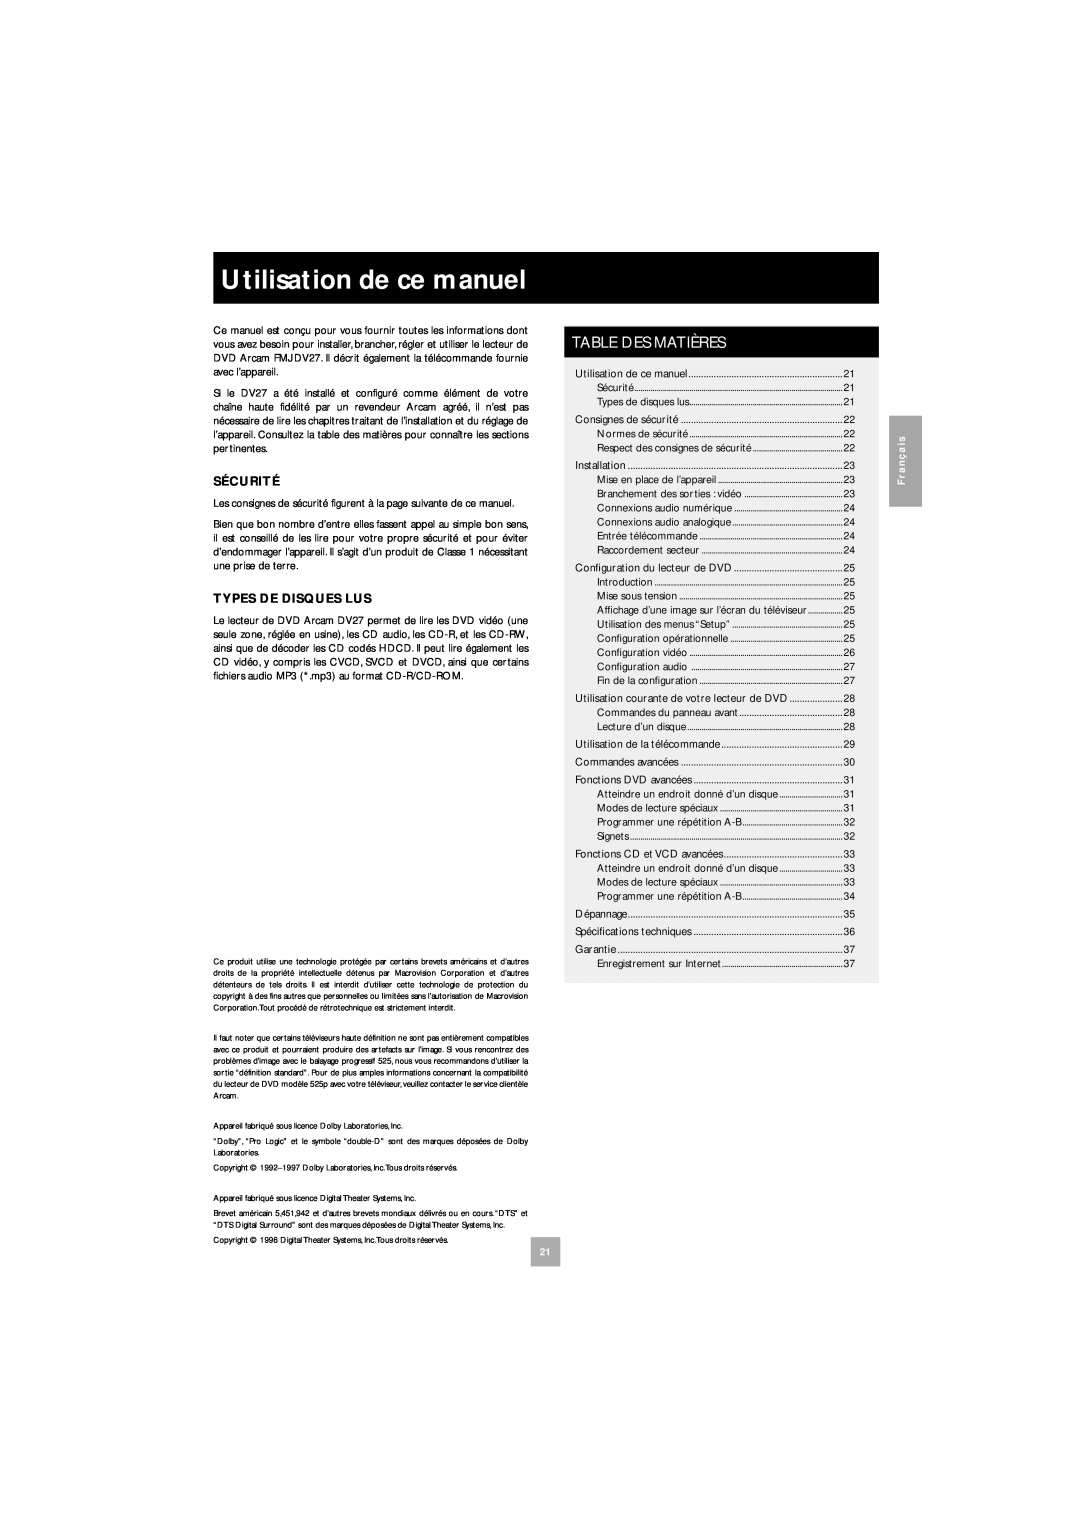 Arcam DV27 manual Utilisation de ce manuel, Table Des Matières 